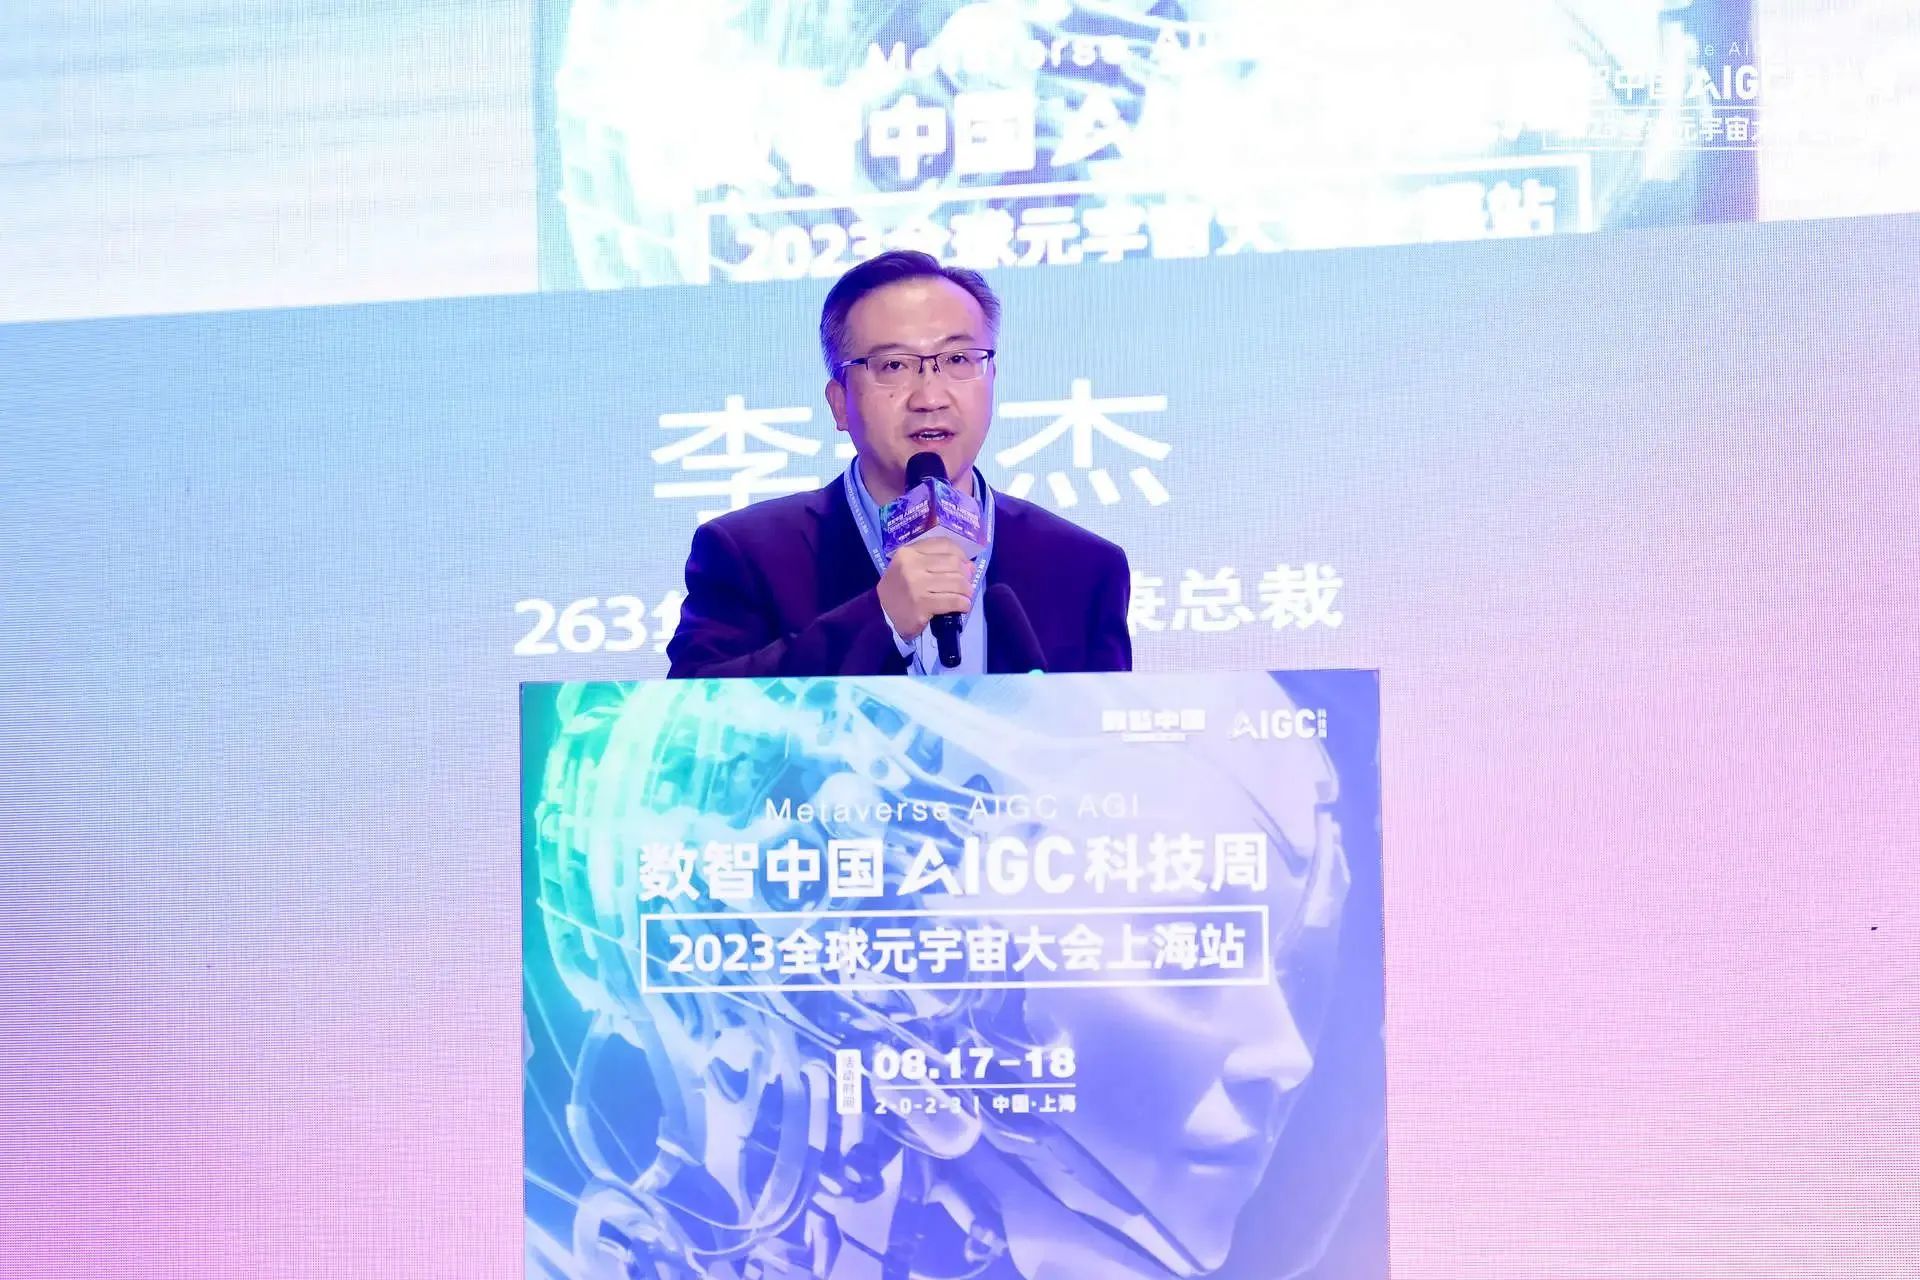 263集团董事长兼总裁李玉杰：专注AIGC应用落地，实现智能连接创新